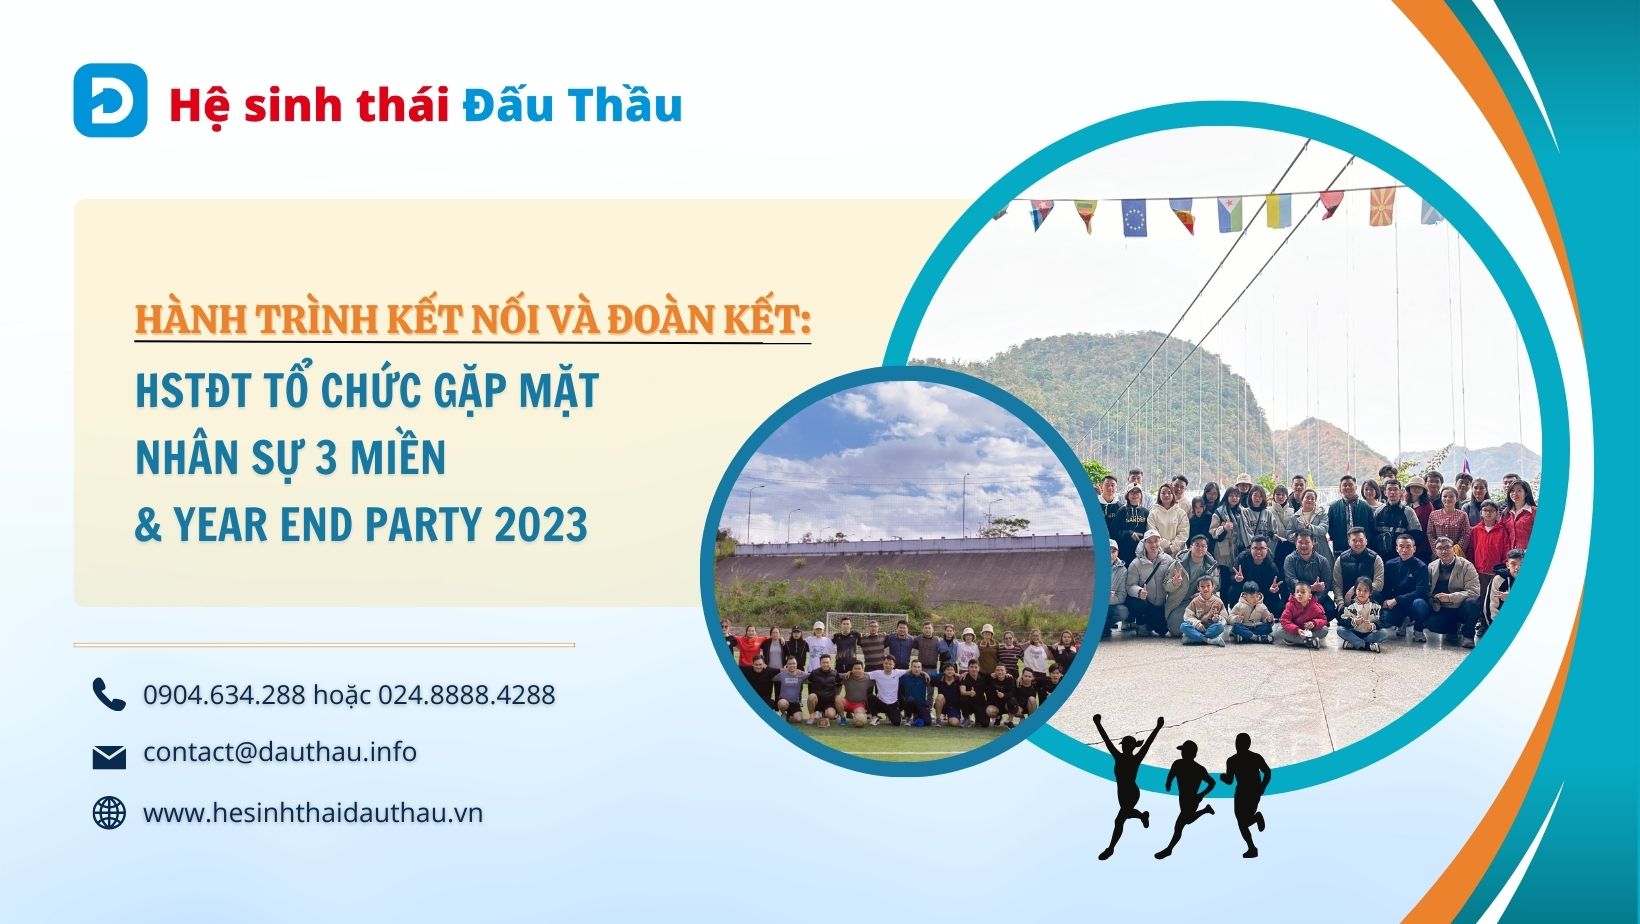 Hành trình kết nối và đoàn kết Hệ sinh thái Đấu Thầu gặp mặt nhân sự 3 miền & Year End Party 2023 tại Mộc Châu